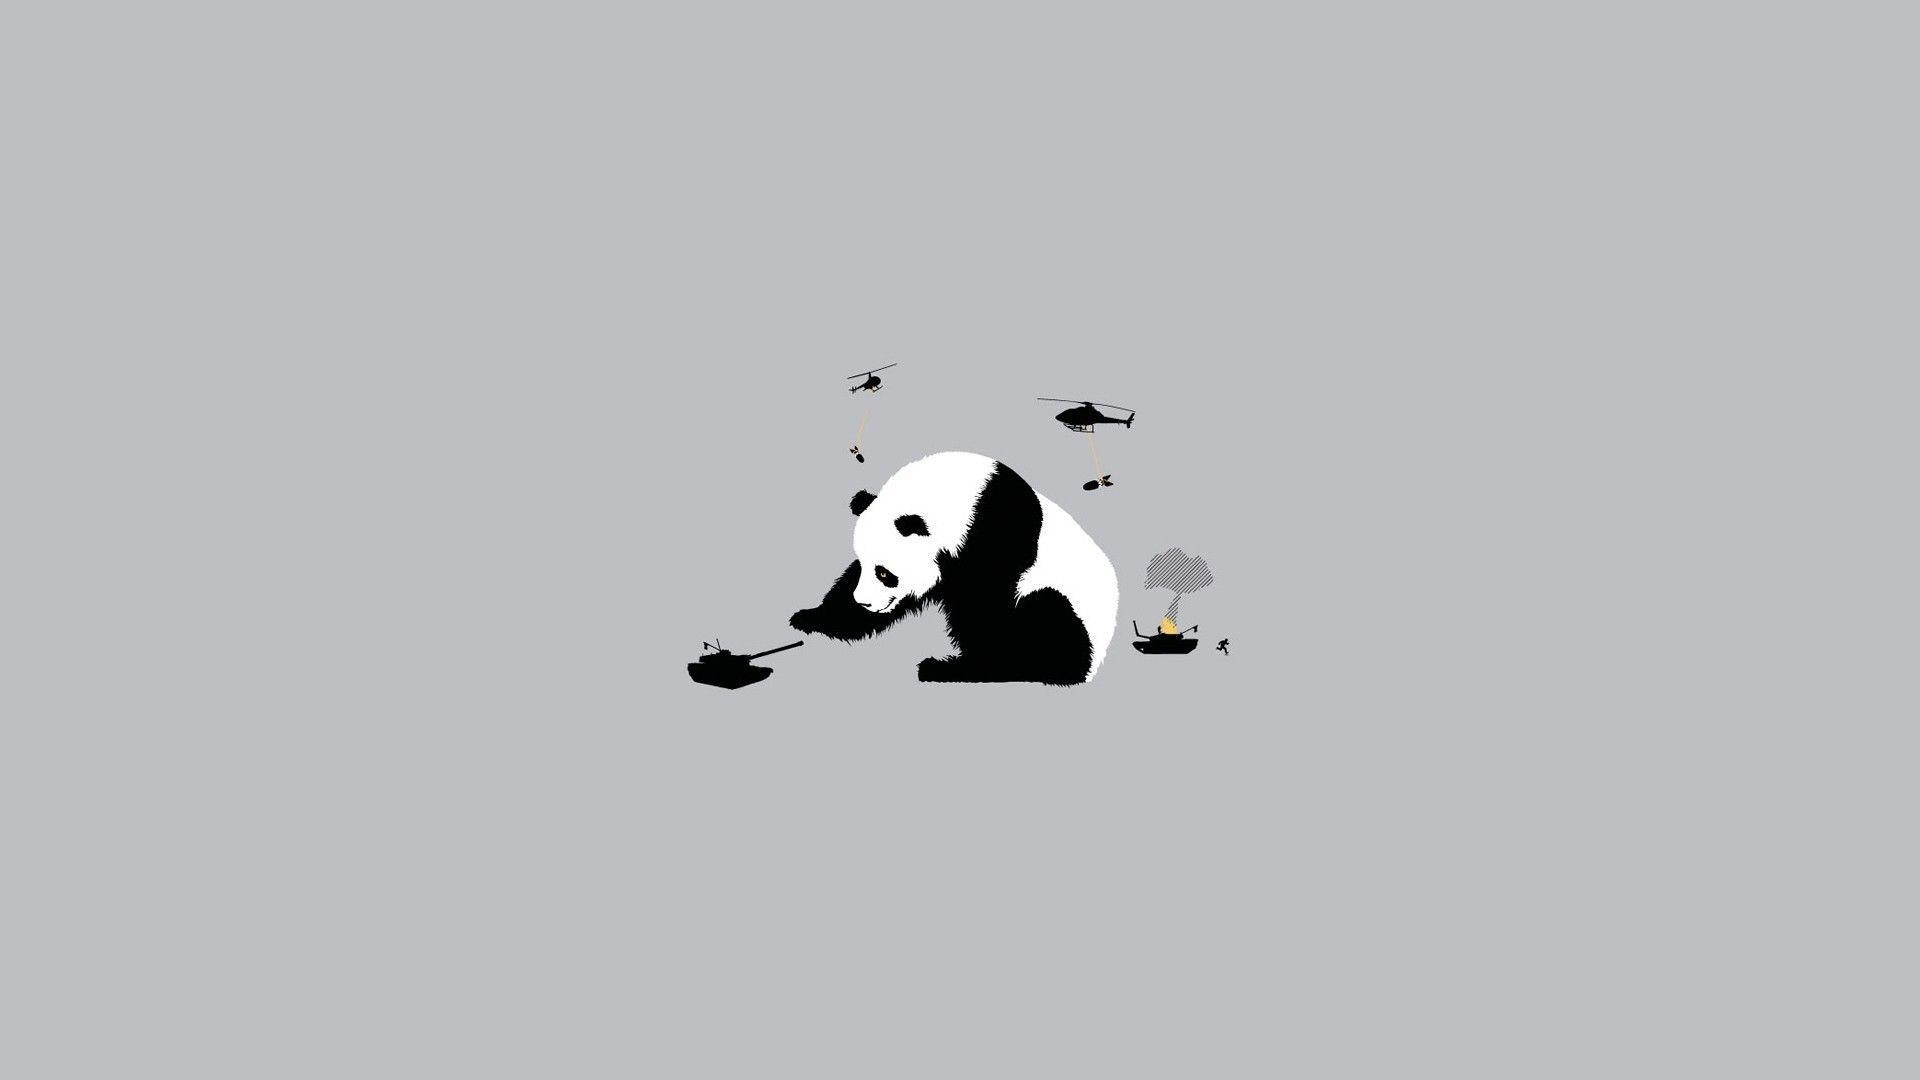 Abstract Panda Wallpapers